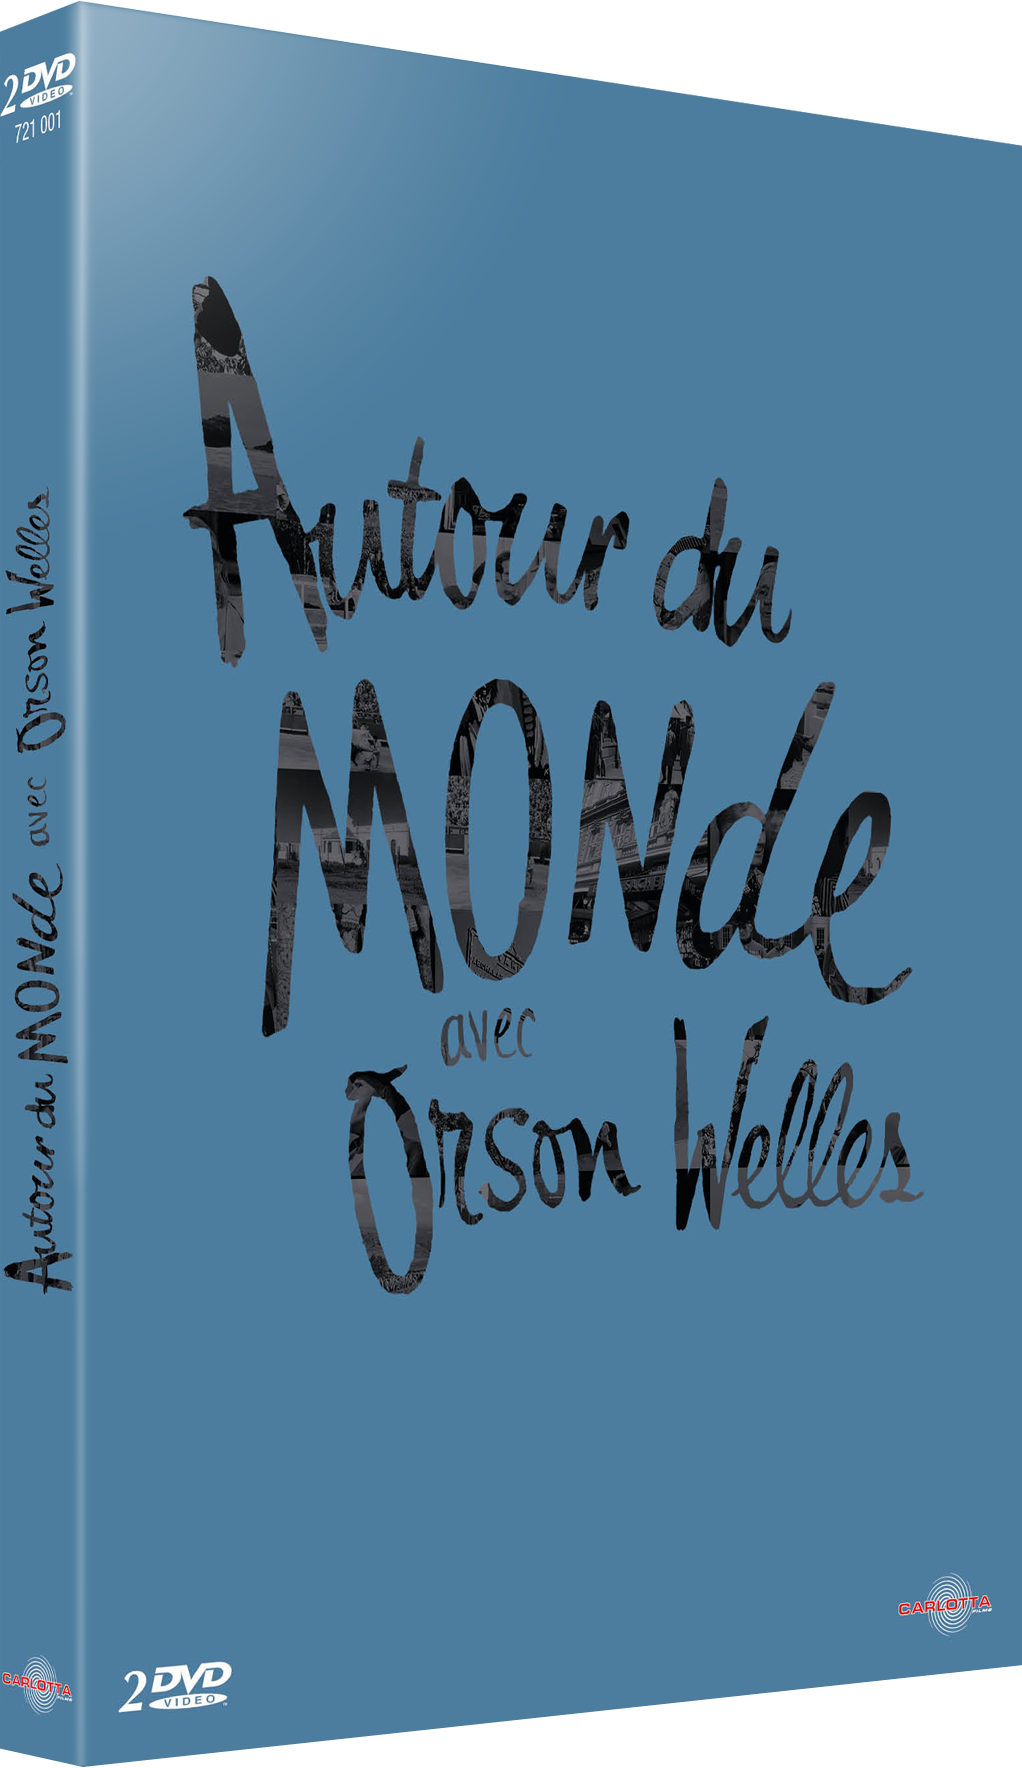 Autour du monde avec Orson Welles - DVD - Carlotta Films - La Boutique